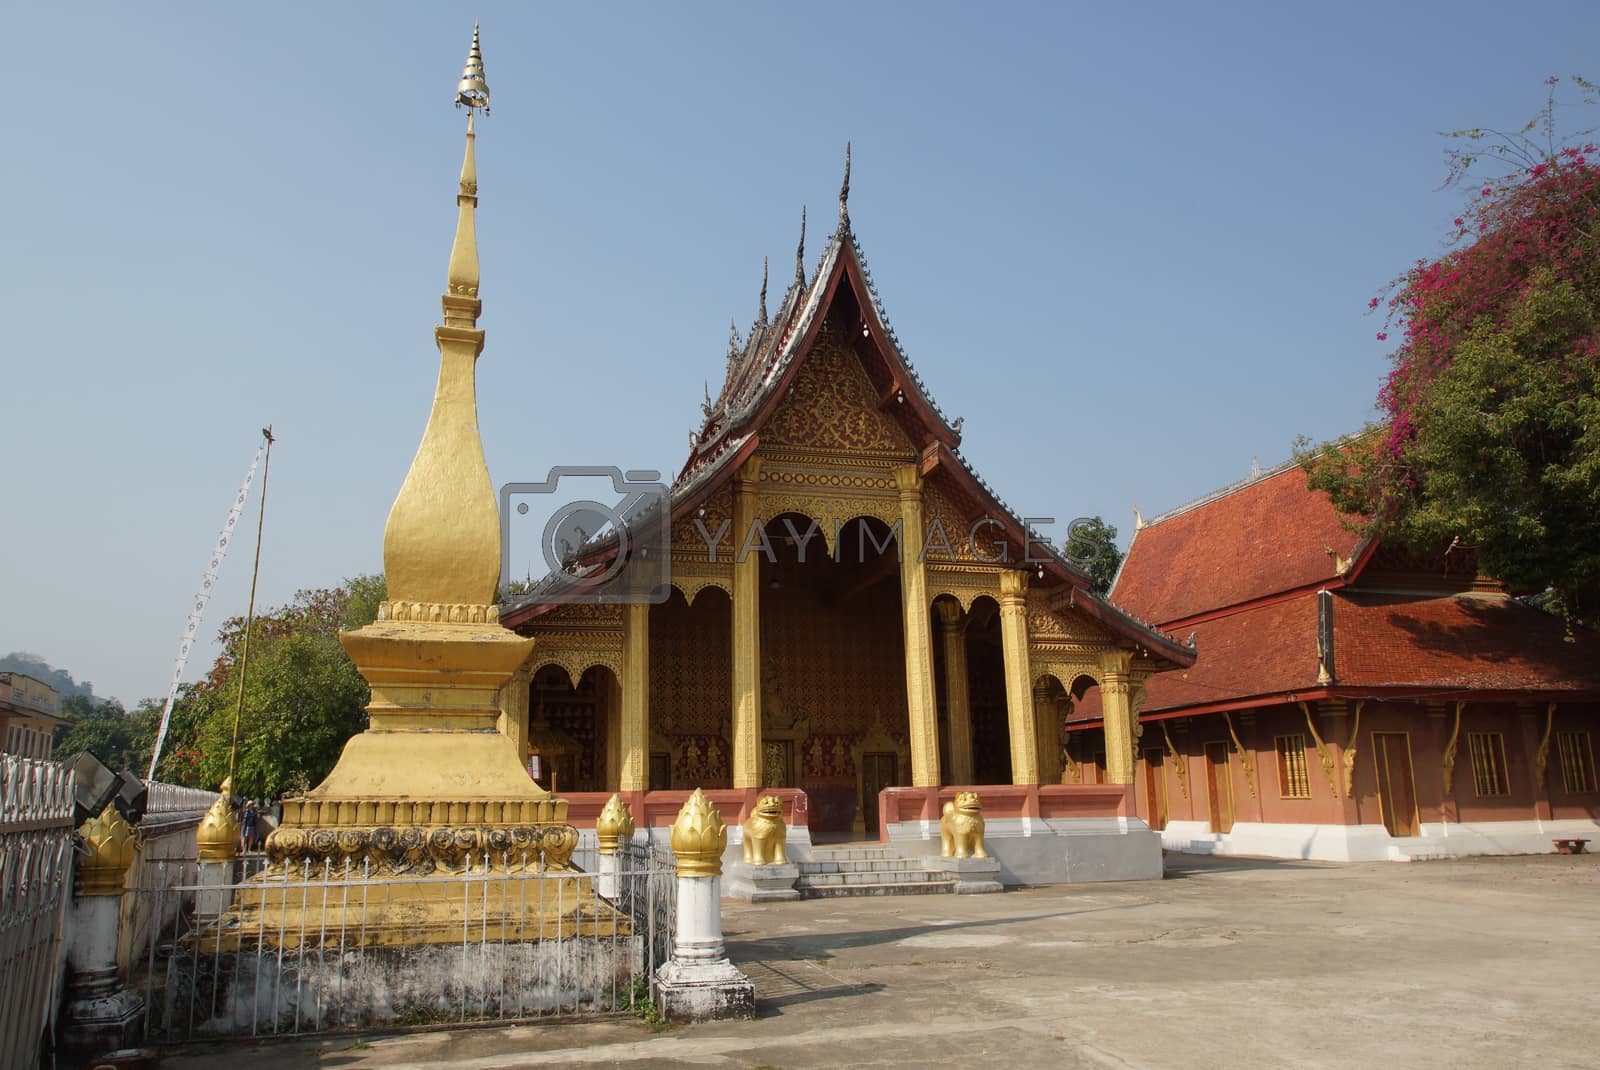 Royalty free image of Luang Prabang, Laos by alfotokunst